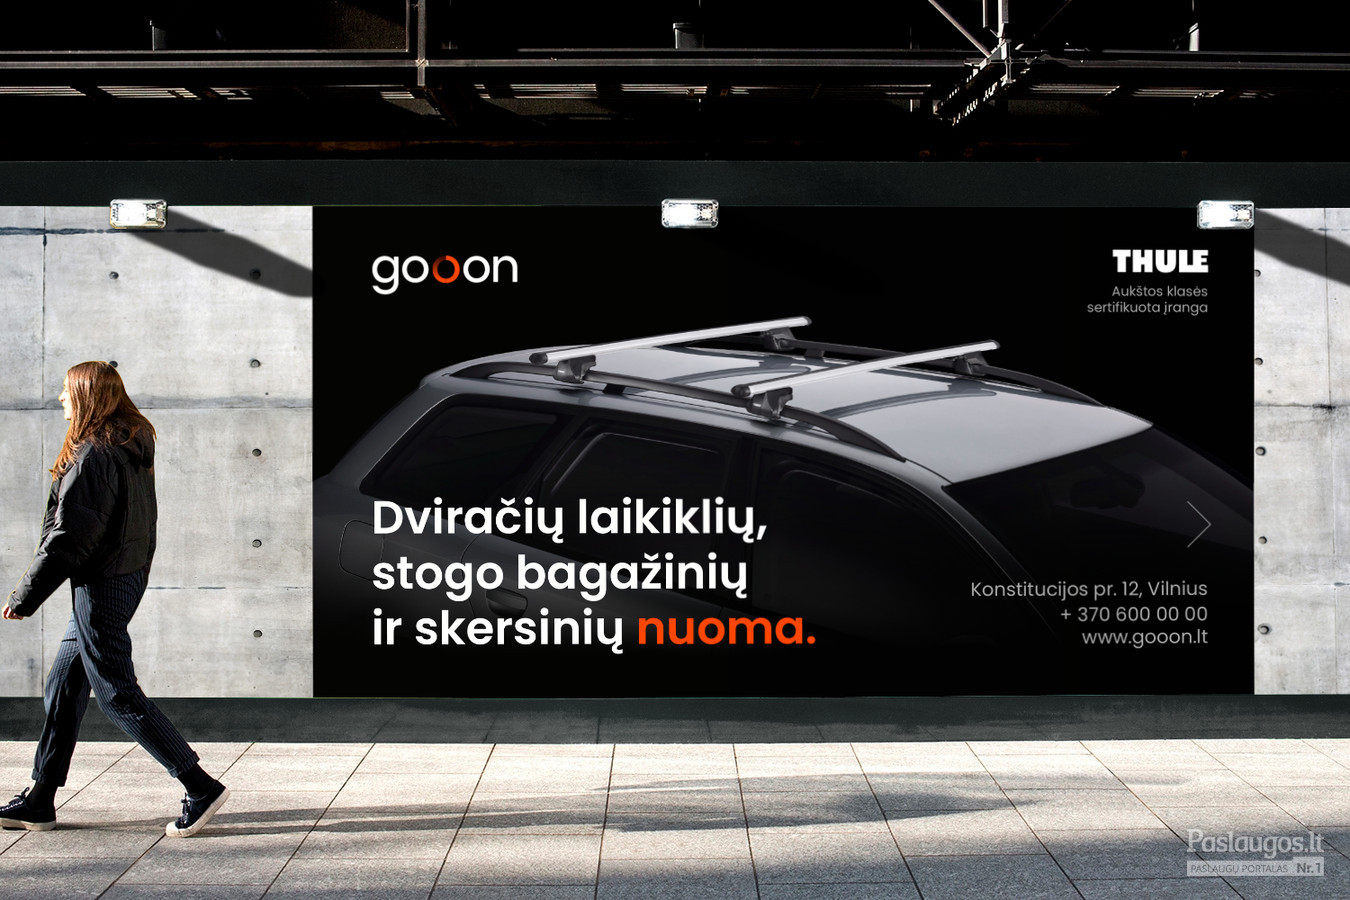 Gooon - Dviračių laikiklių, stogo bagažinių nuoma / Pavadinimas, logotipas, firminis stiliaus, Fecebook / Kostas Vasarevicius - kostazzz@gmail.com